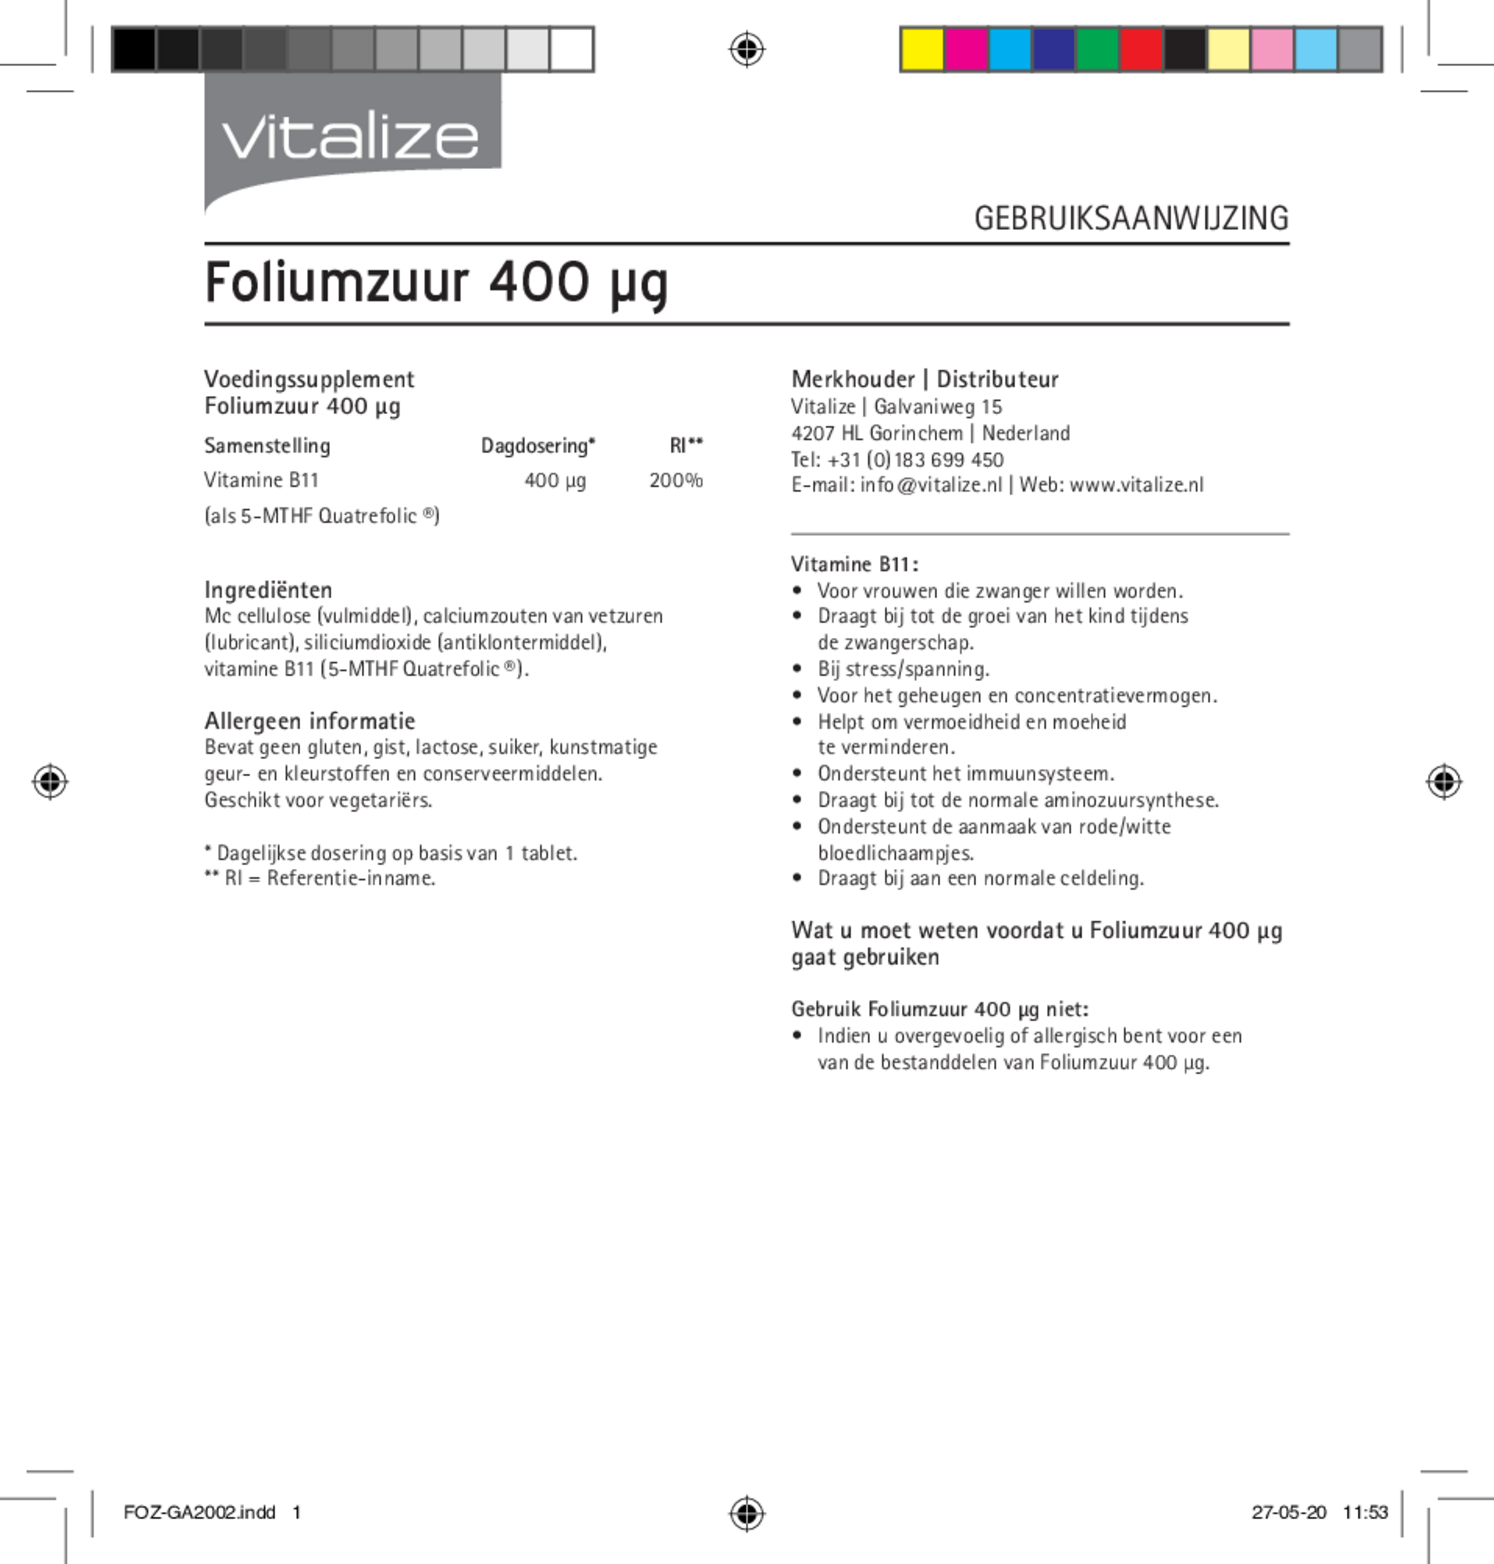 Foliumzuur 400mcg Tabletten afbeelding van document #1, gebruiksaanwijzing